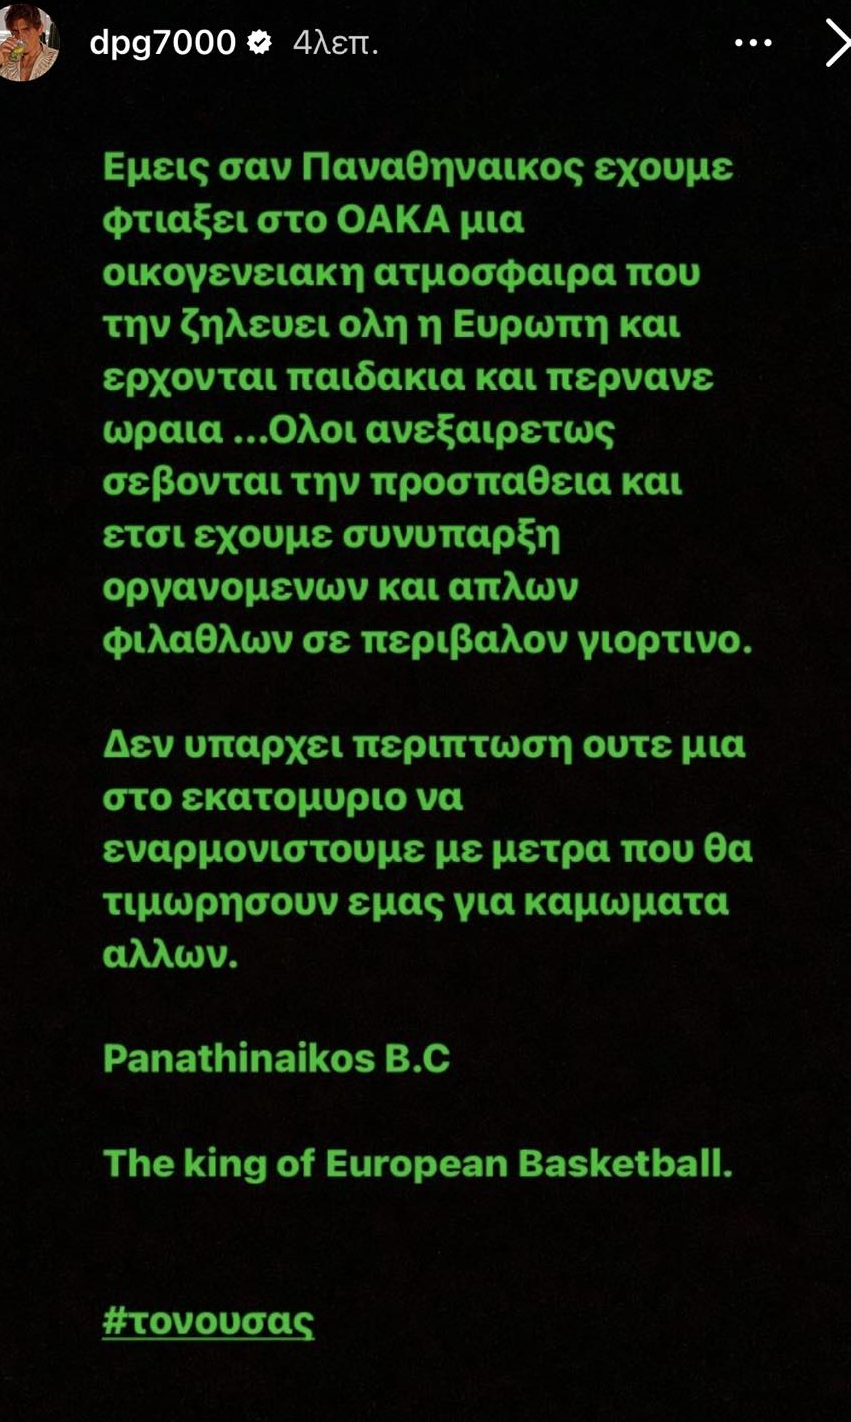 Γιαννακόπουλος: «Δεν πρόκειται να δεχθούμε μέτρα για καμώματα άλλων»